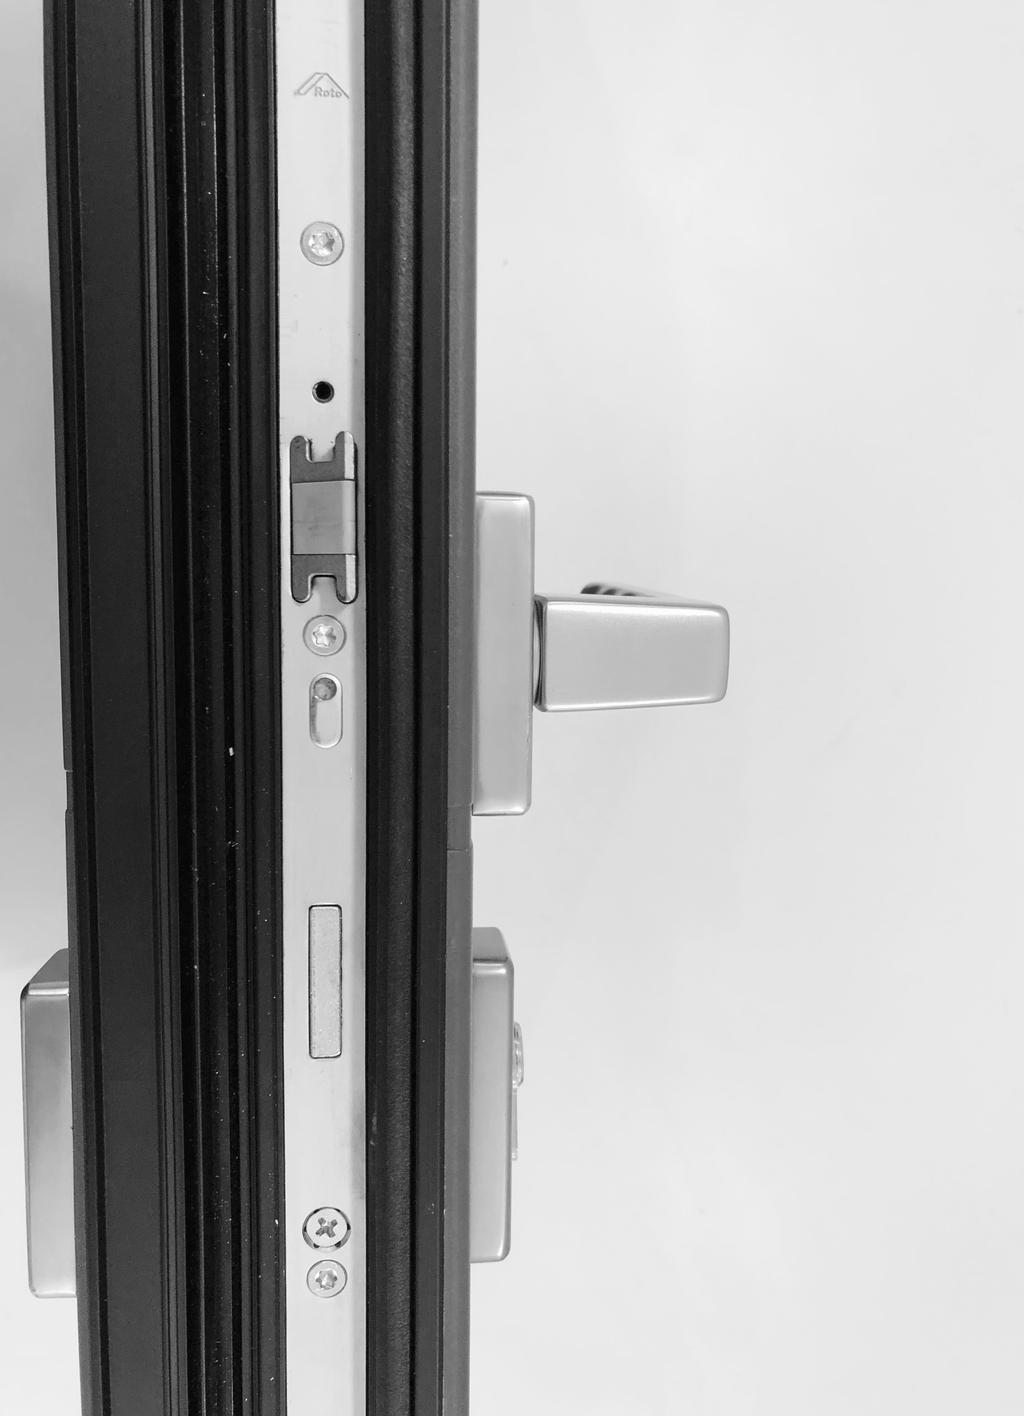 02 Catálogo puerta Pros monopanel - Caracteristicas El umbral con aislamiento previene la pérdida de energía y ofrece una protección fiable